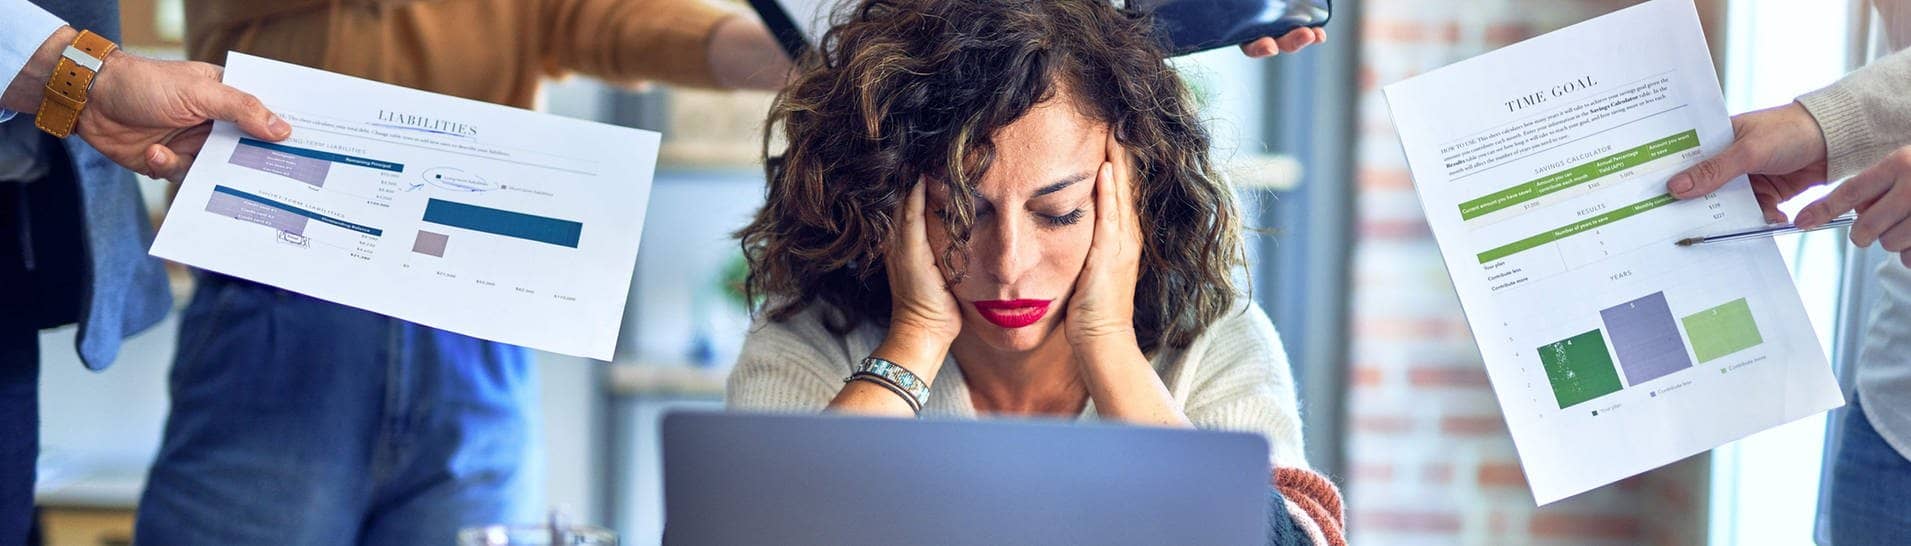  Krakenimages.com (Foto: Adobe Stock, Junge Frau stützt überfordert den Kopf in die Hände, sie sitzt im Büro vor einem Laptop, um sie herum strecken ihr Menschen Arbeitsutensilien entgegen. Symbolbild für Überstunden und Mehrarbeit im Job, die überfordert.)